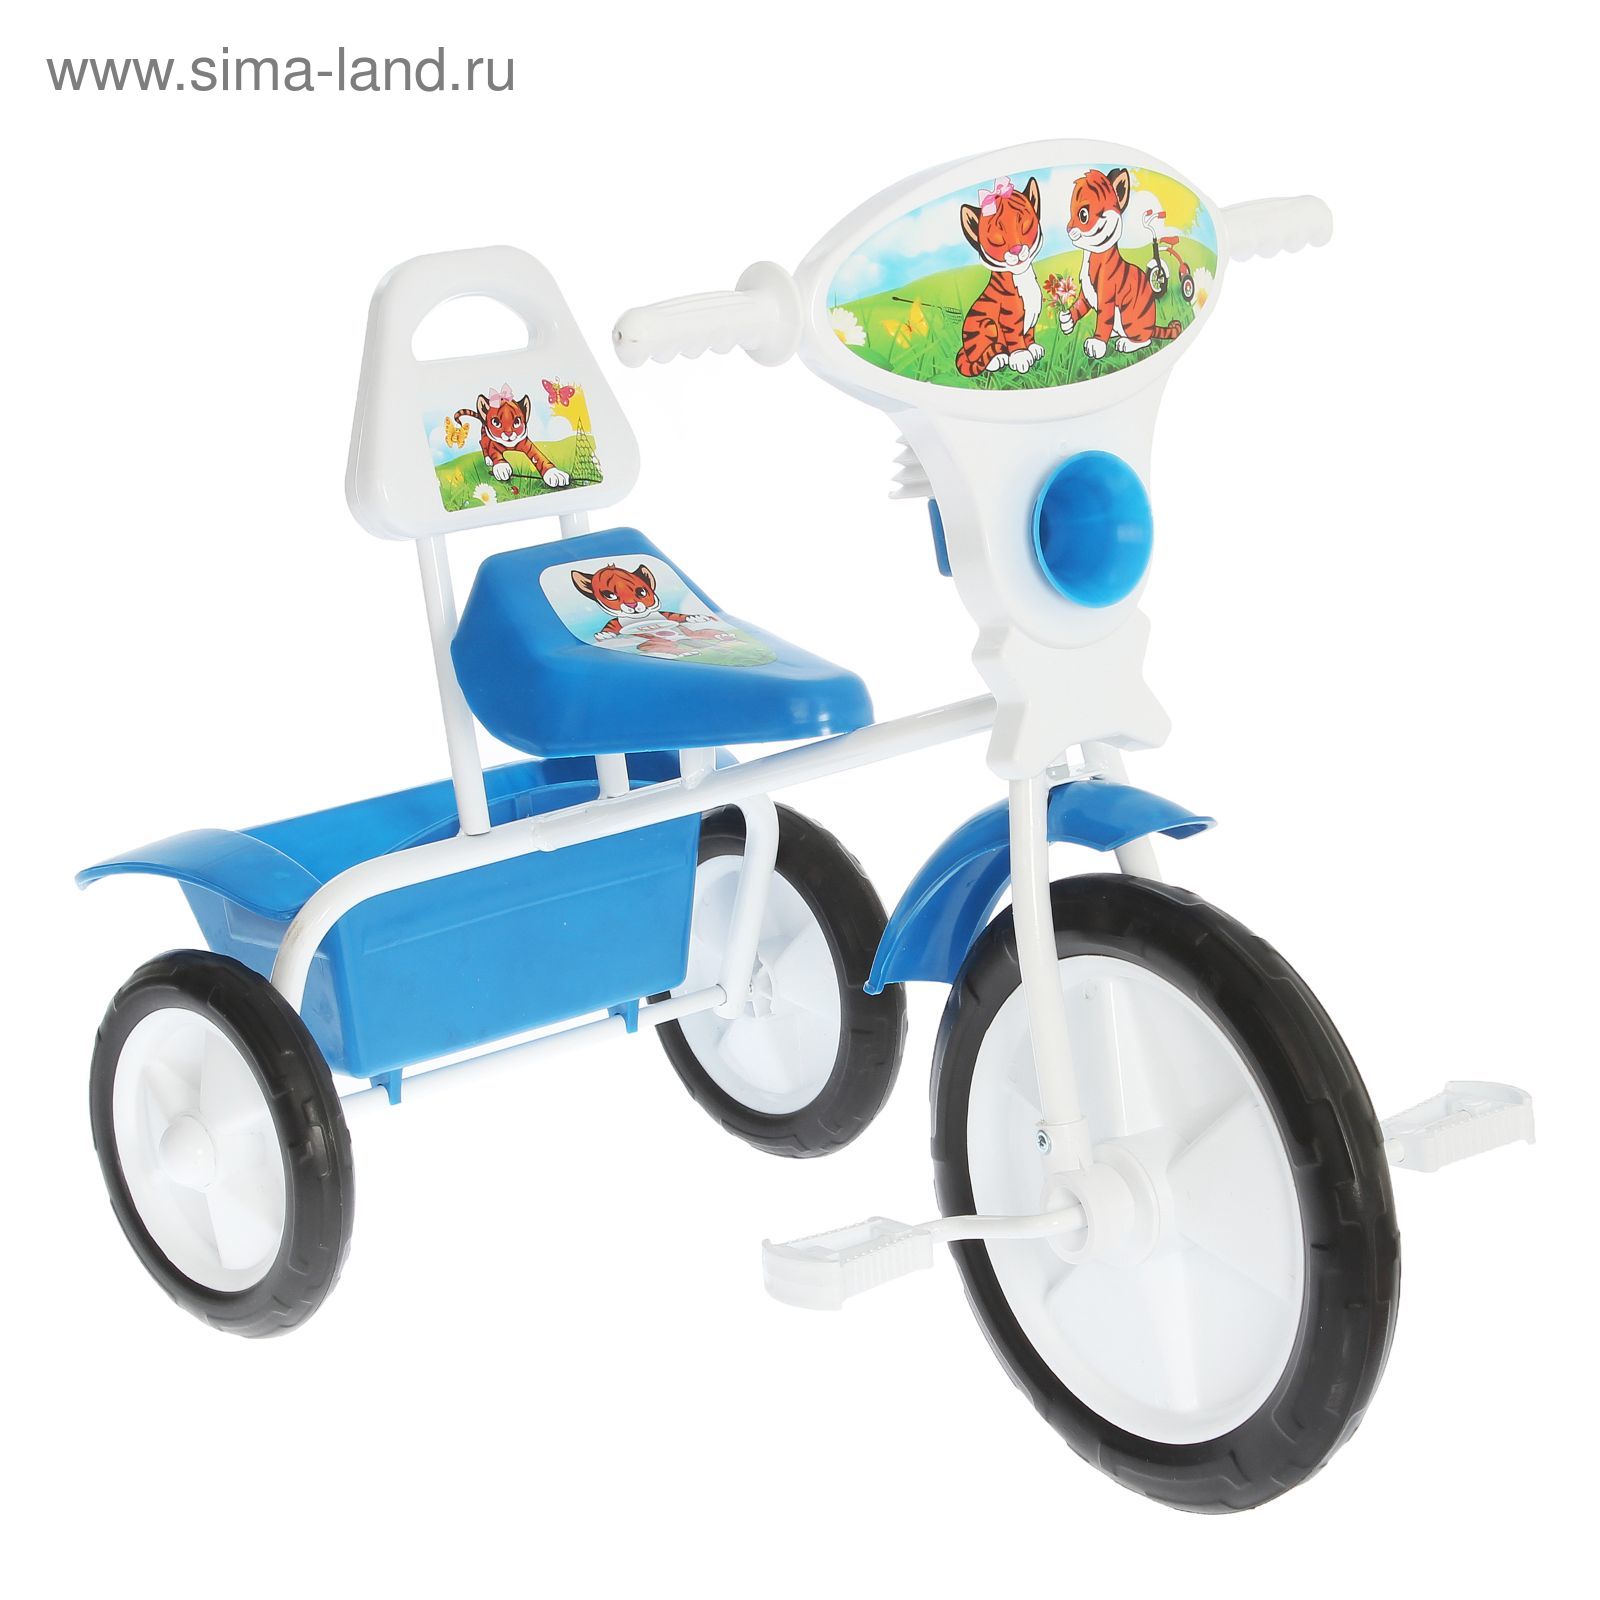 Велосипед трехколесный  "Малыш"  06П, цвет синий, фасовка: 2шт.